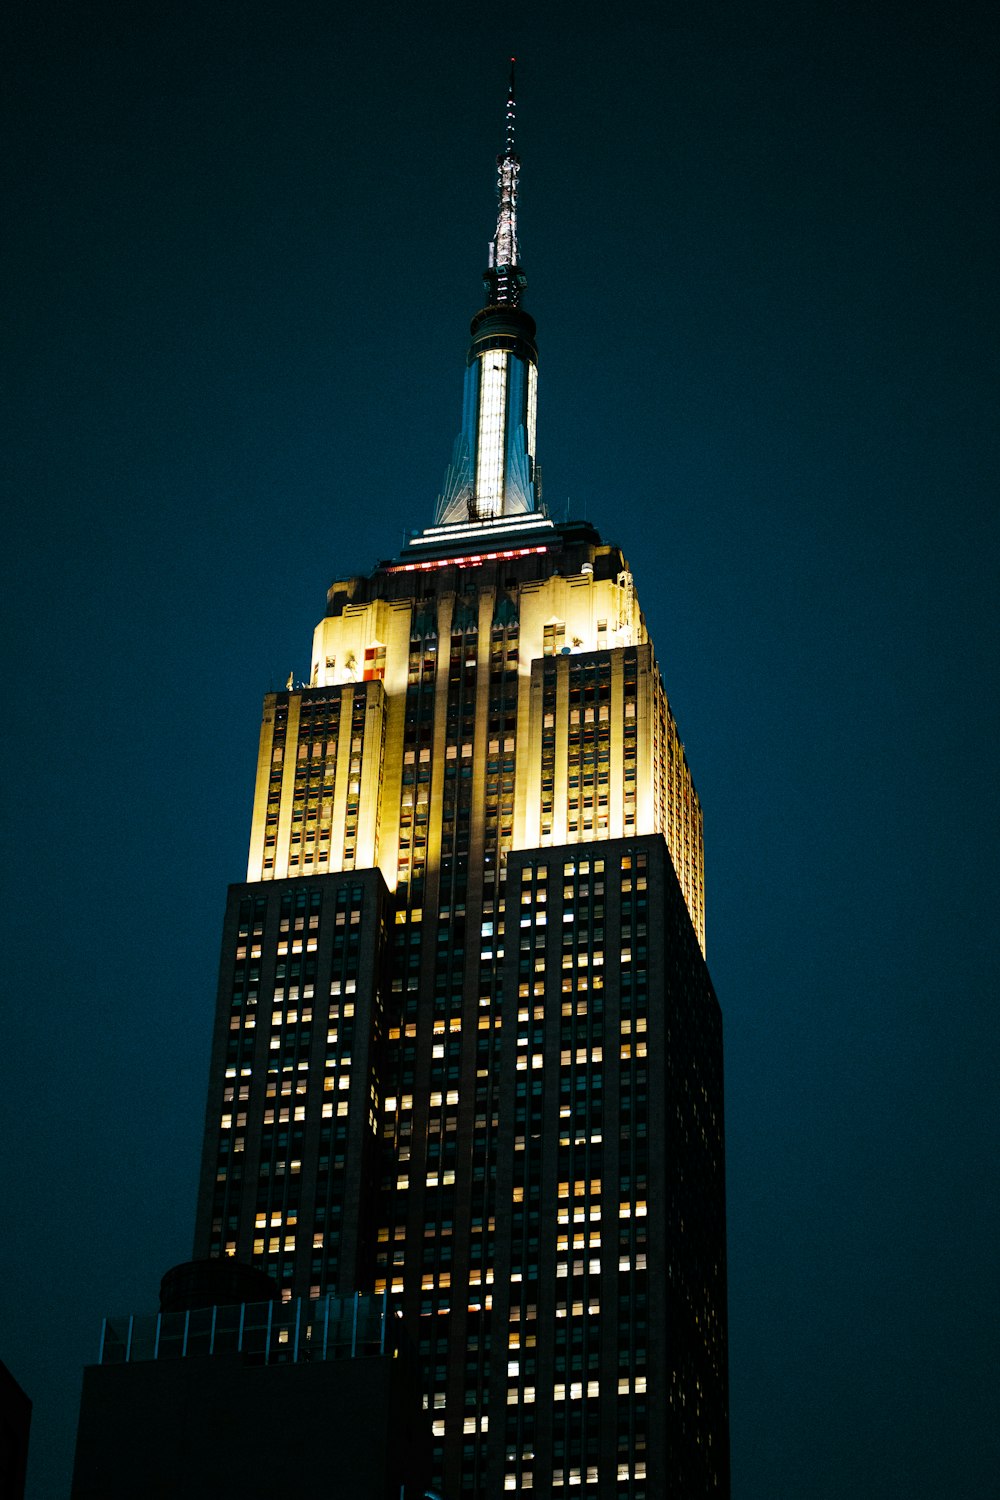 o topo de um edifício alto iluminado à noite